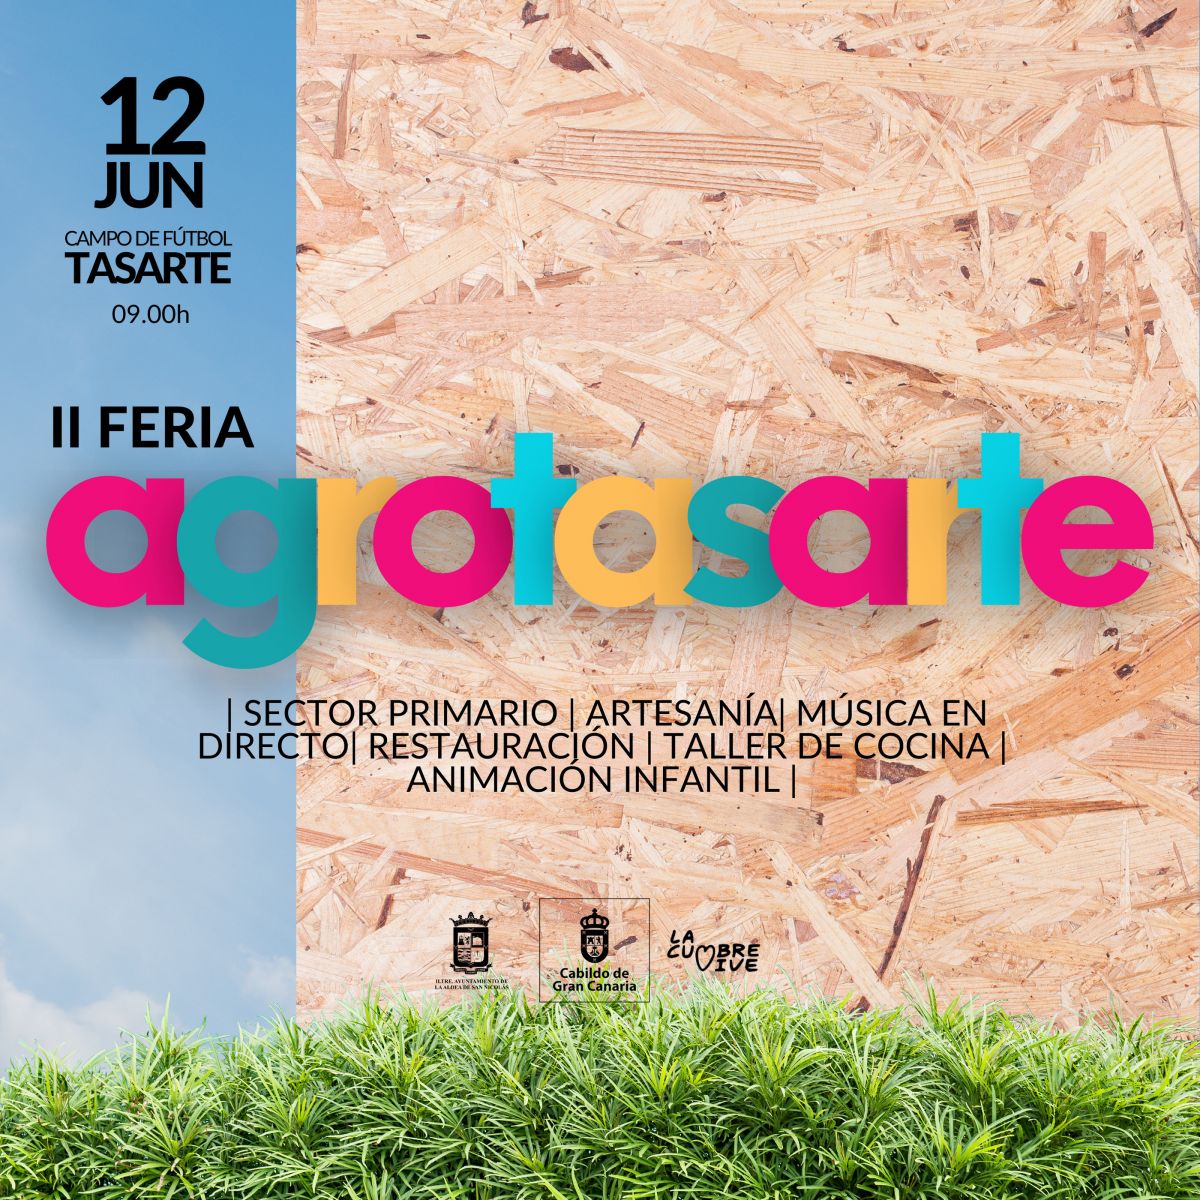 La Aldea celebra la II Edición de la Feria Agrotasarte el domingo 12 de junio